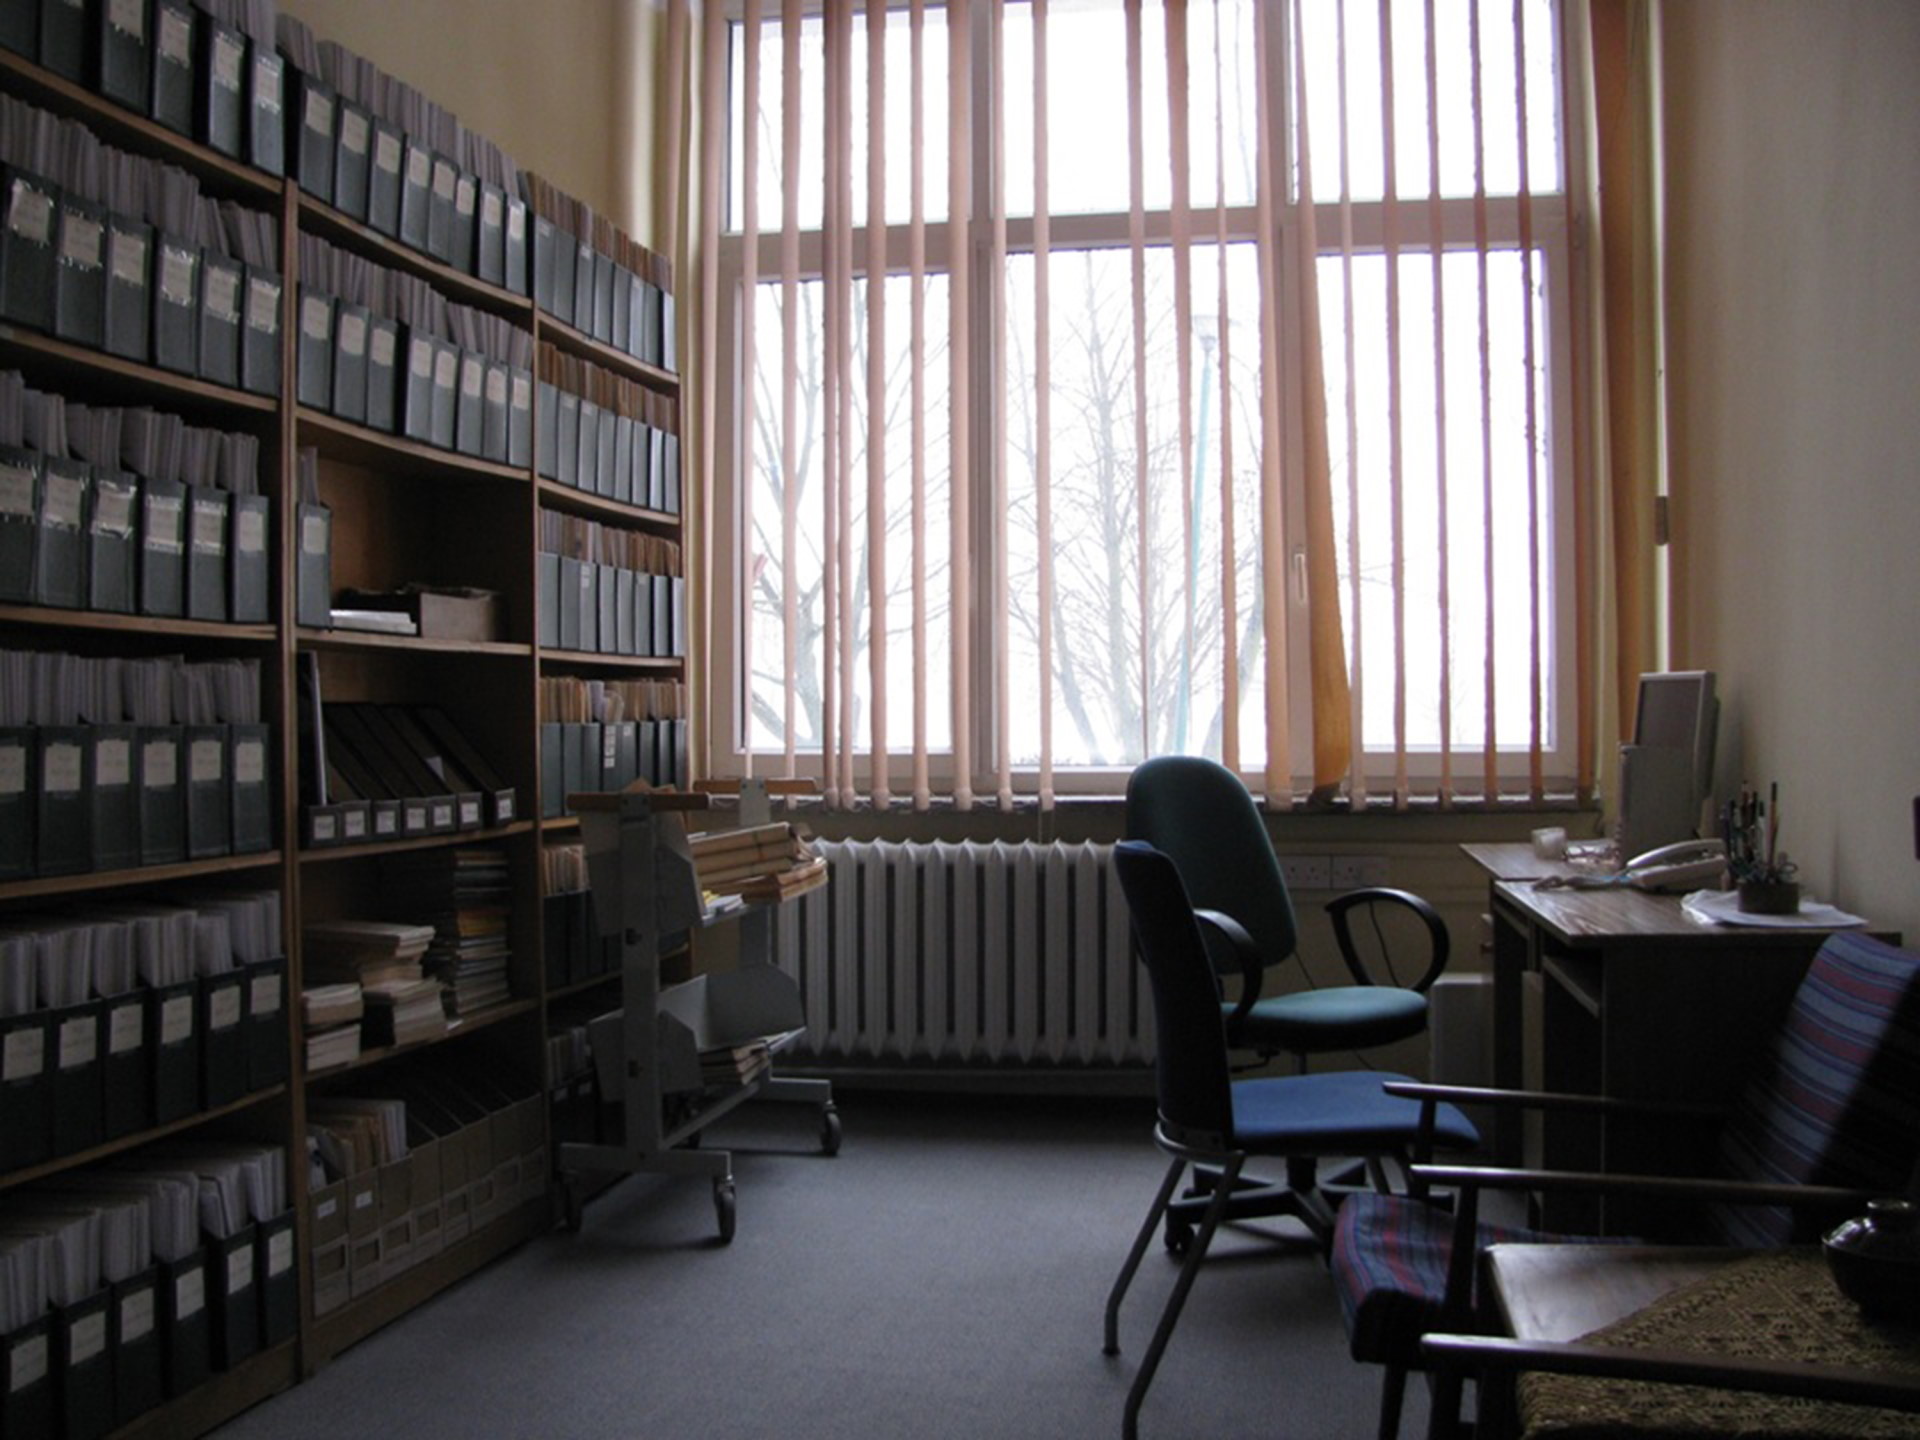 Pomieszczenie biurowe, w którym po prawej stoi biurko i dwa krzesła natomiast po lewej regał pełen segregatorów w jednolitym ciemnym kolorze, na środkowej ścianie okno przesłonięte pionowymi żaluzjami.